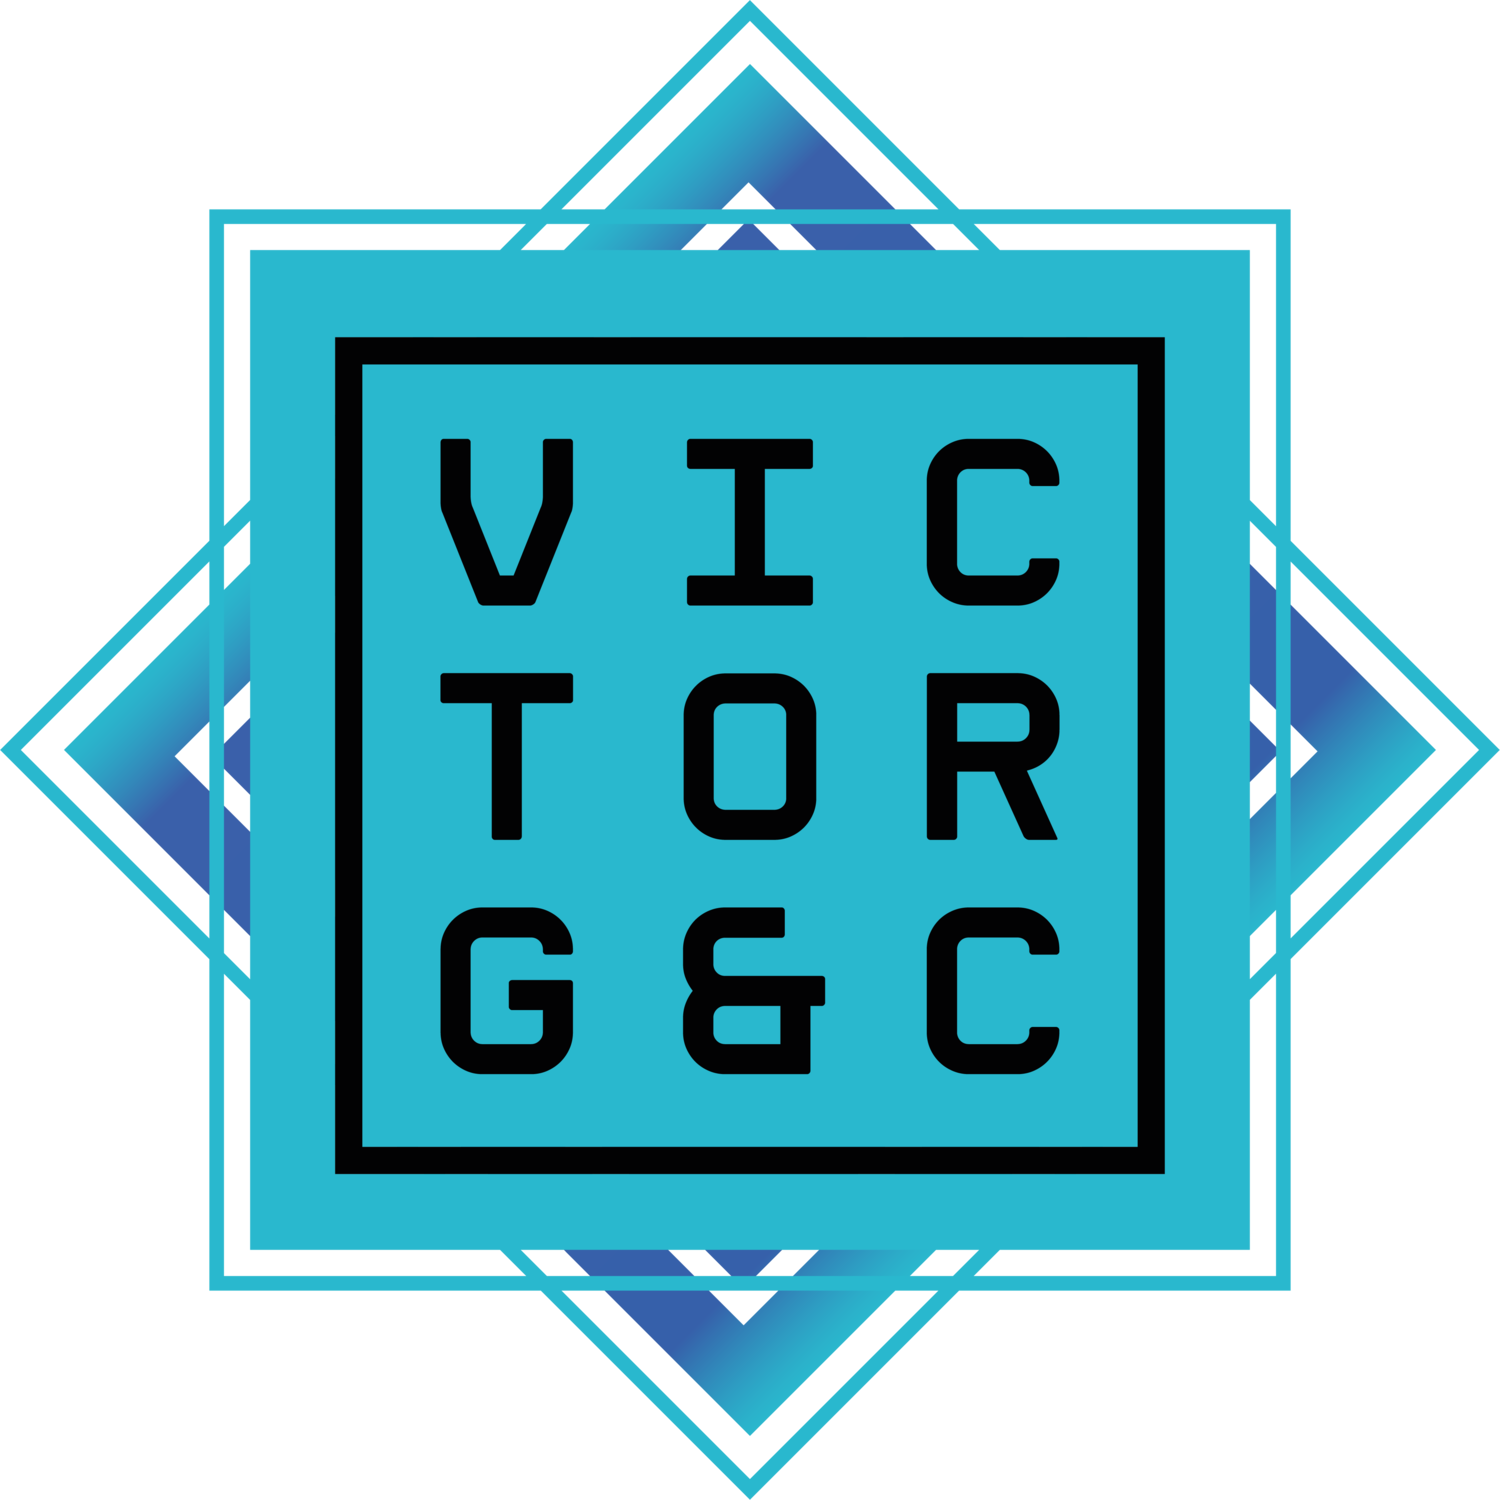 victorgc's portfolio